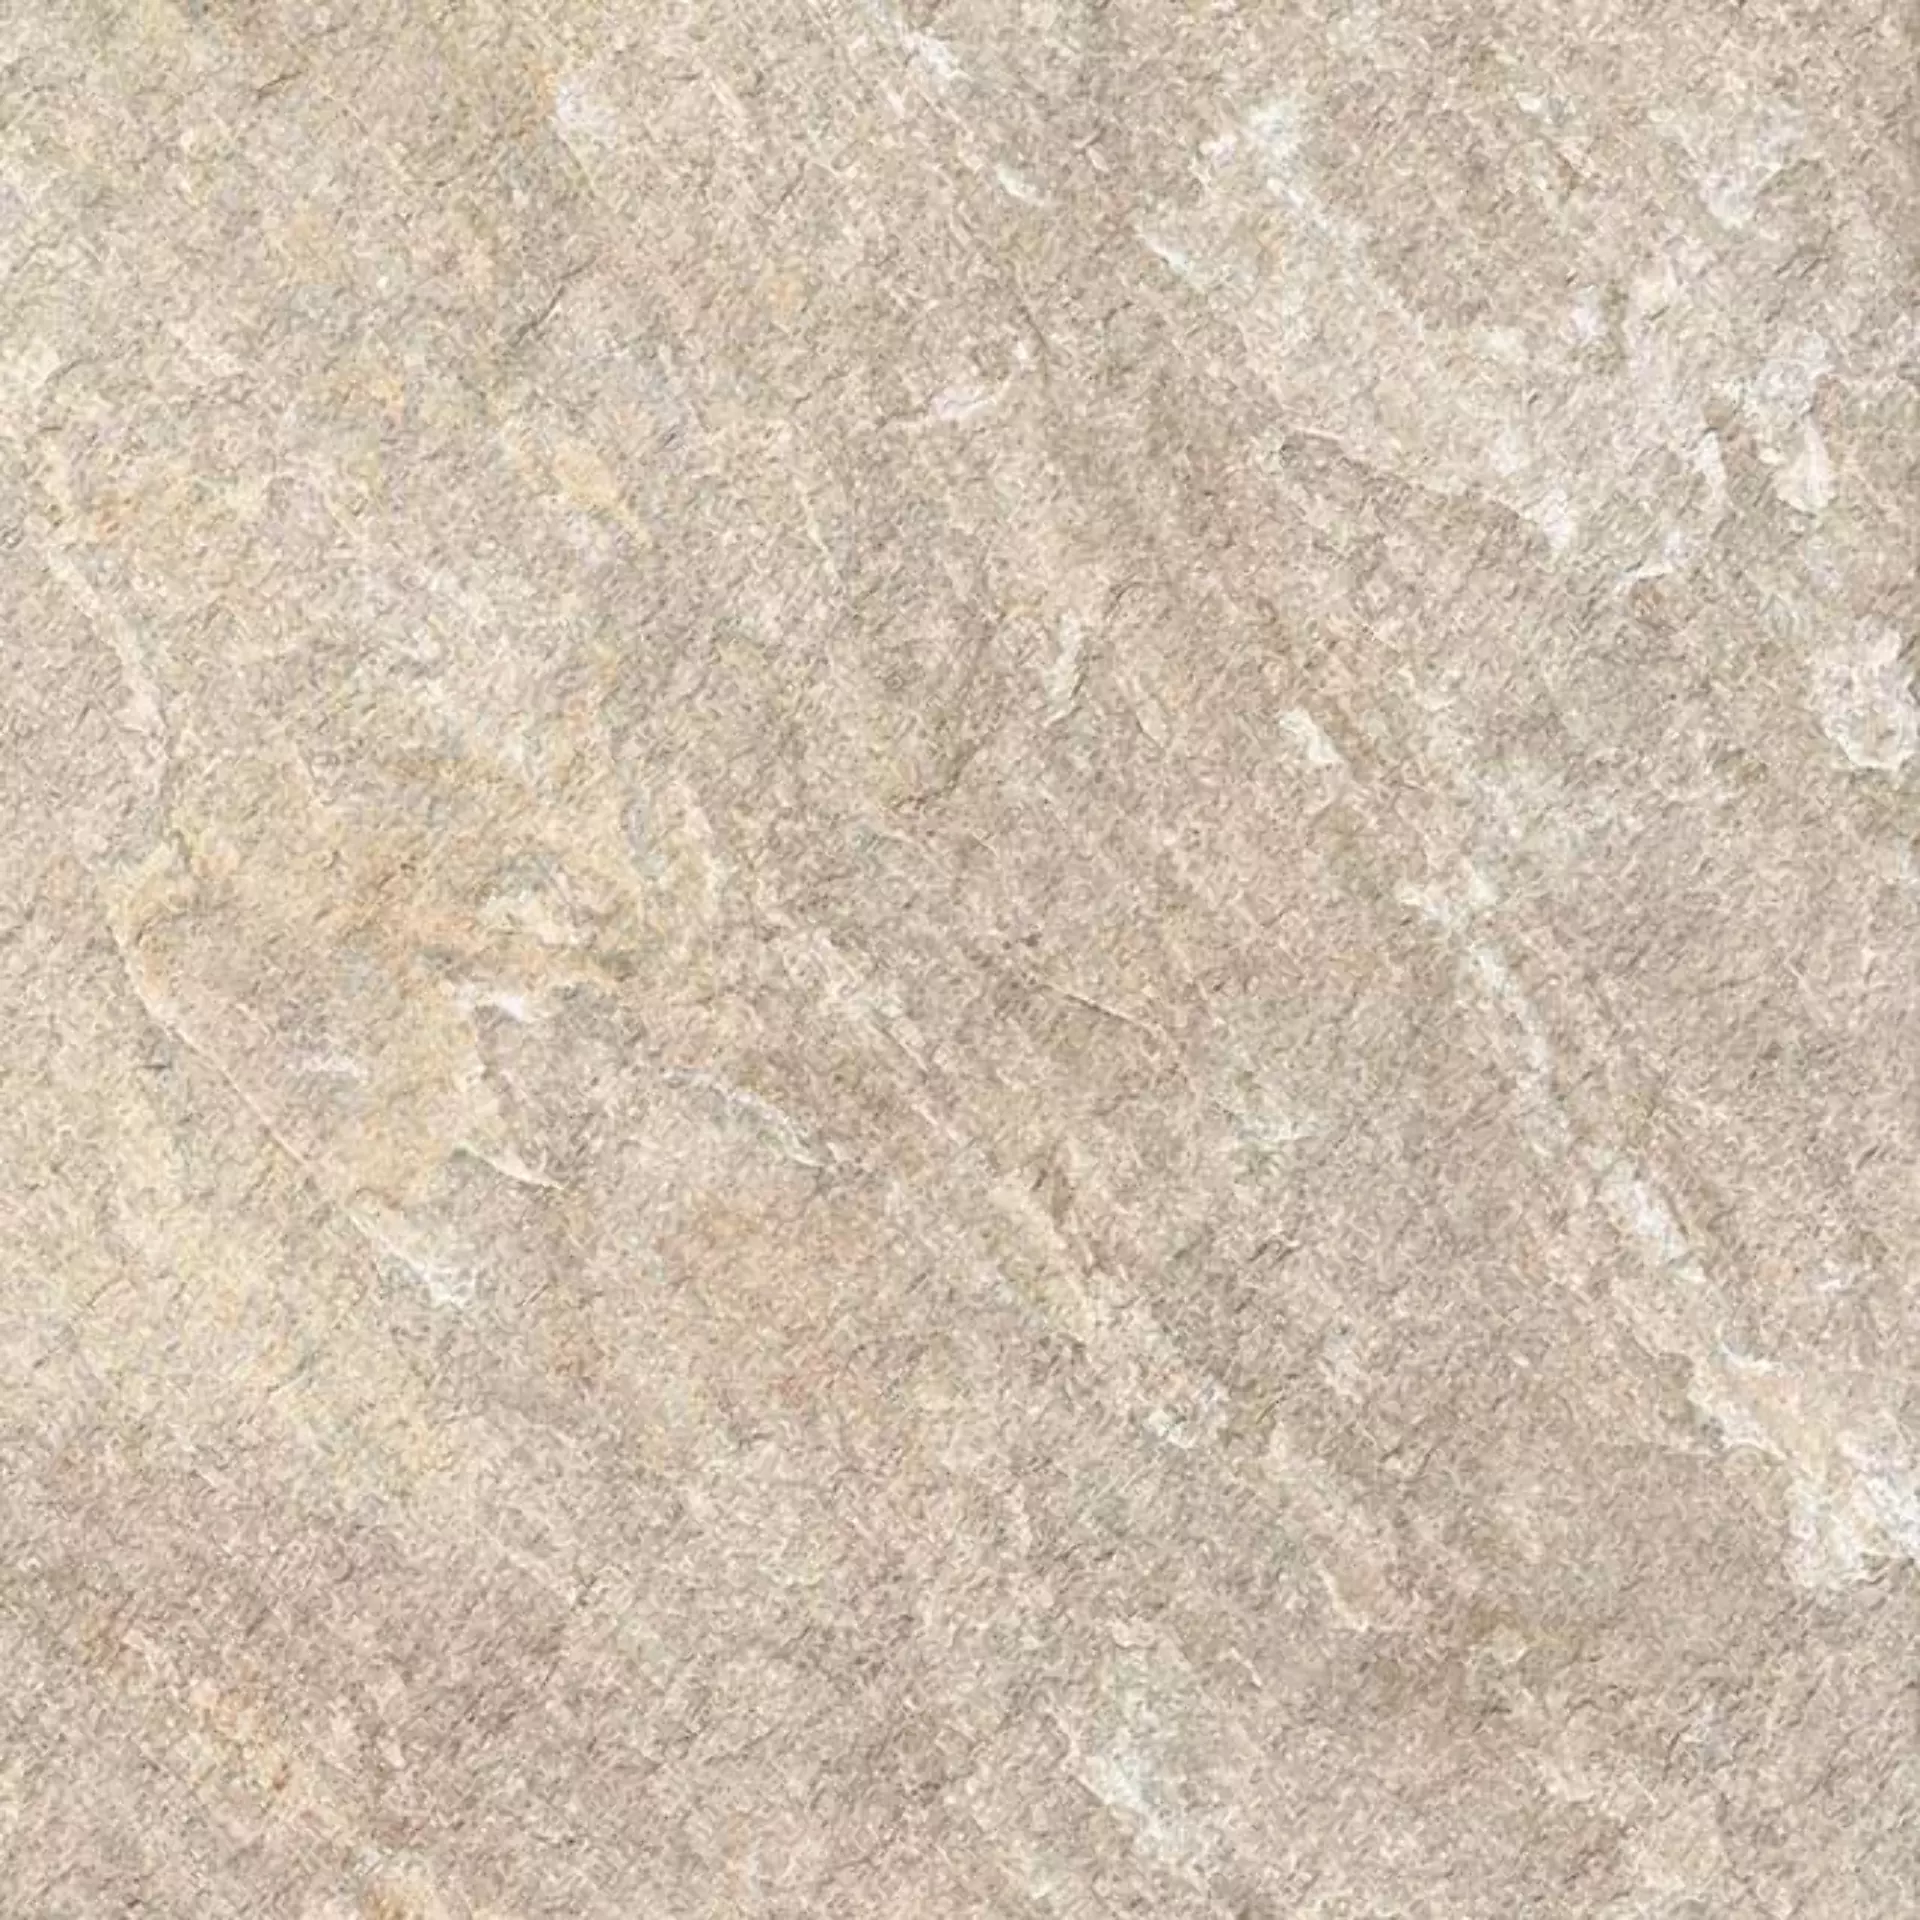 Casalgrande Petra Sabbia Naturale – Matt 13460058 60x120cm rectified 9mm